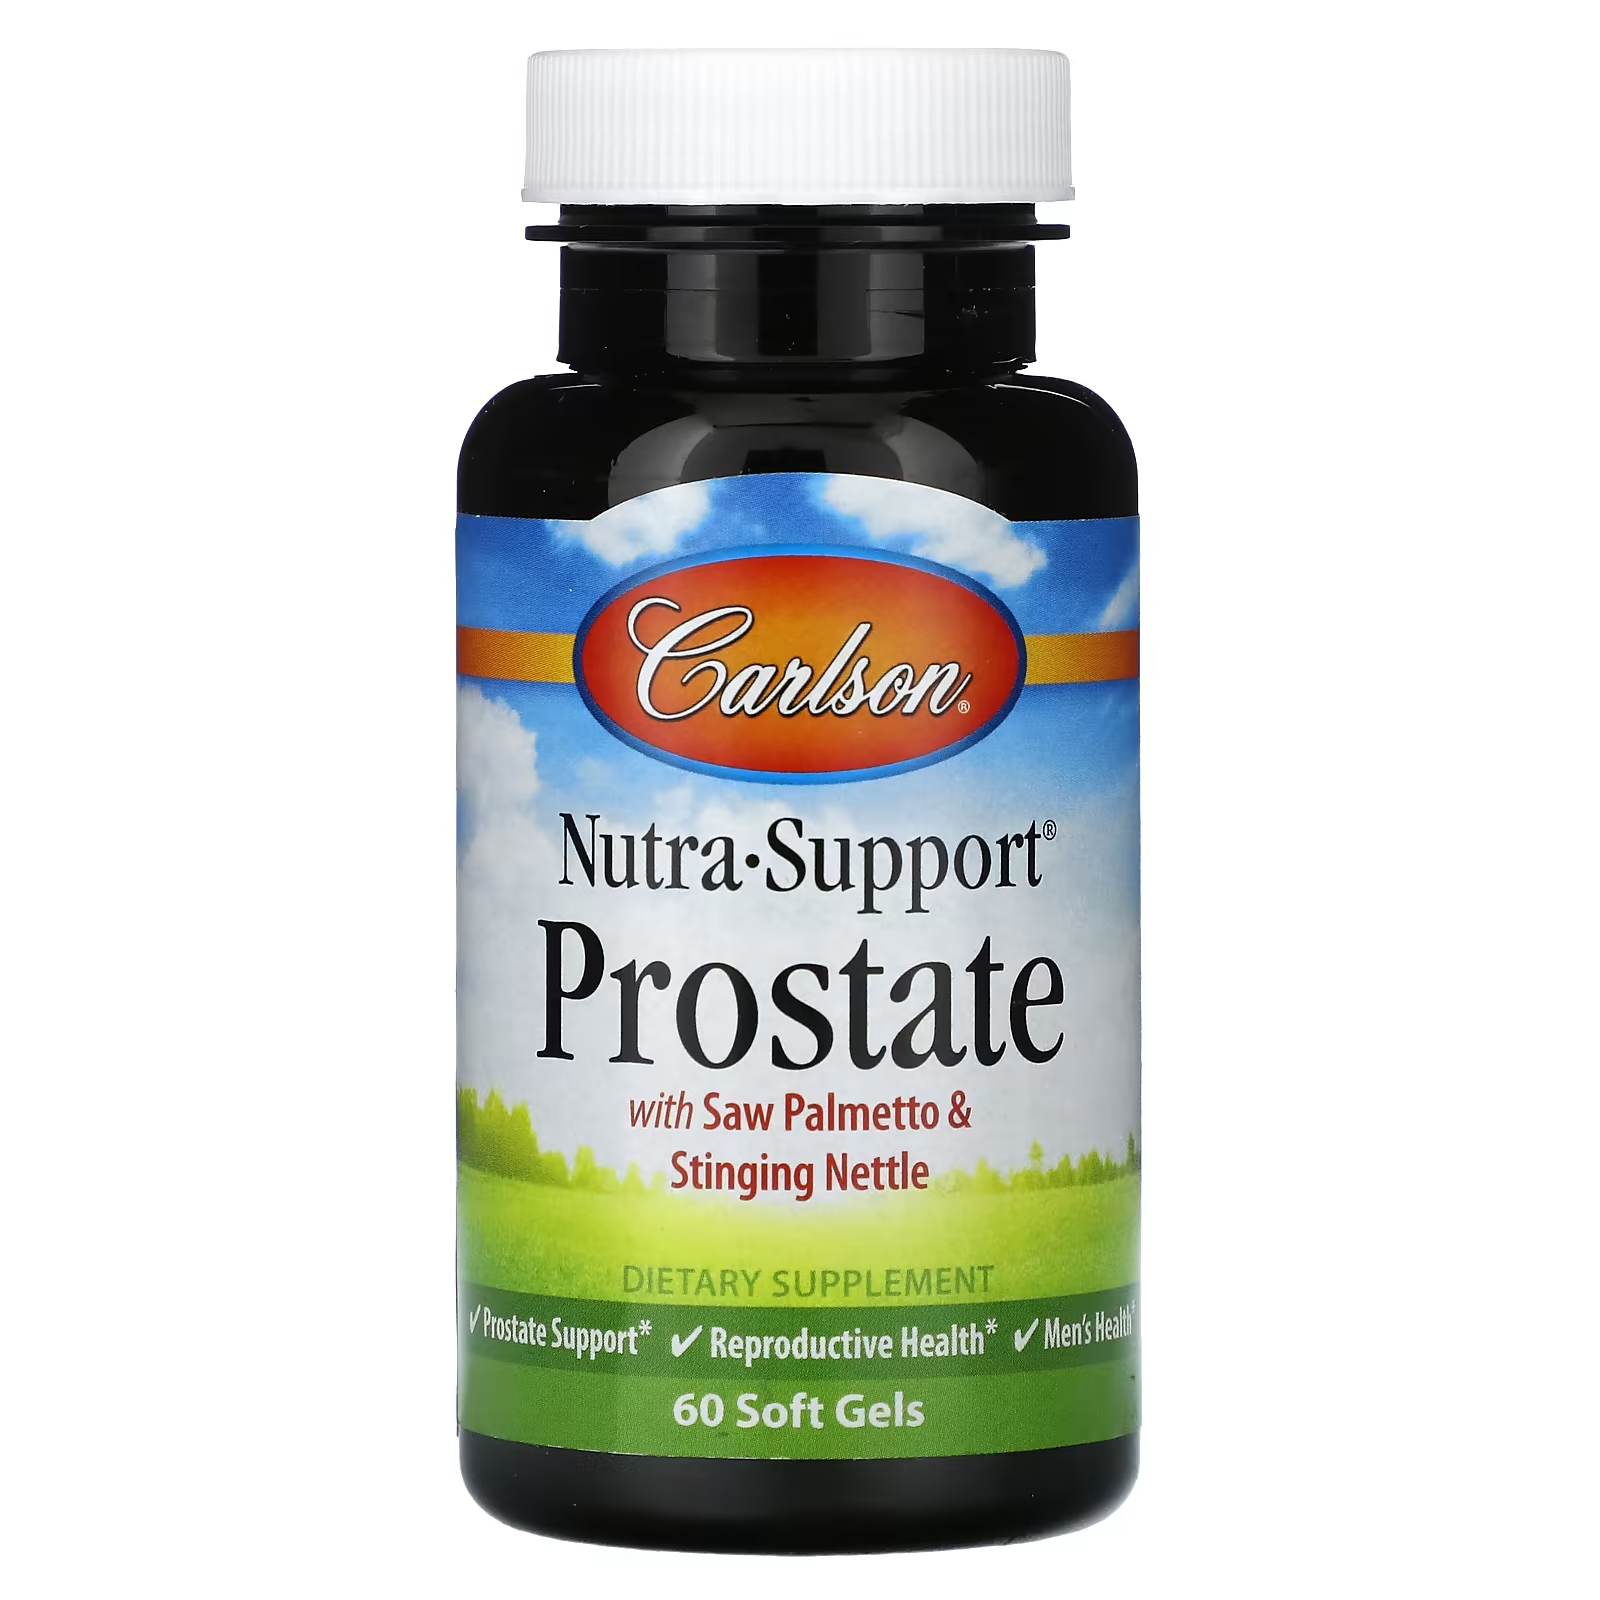 Пищевая добавка Carlson Nutra-Support Prostate, 60 мягких гелей swanson травяной комплекс для простаты с серой пигеумом и крапивой двудомной 200 капсул